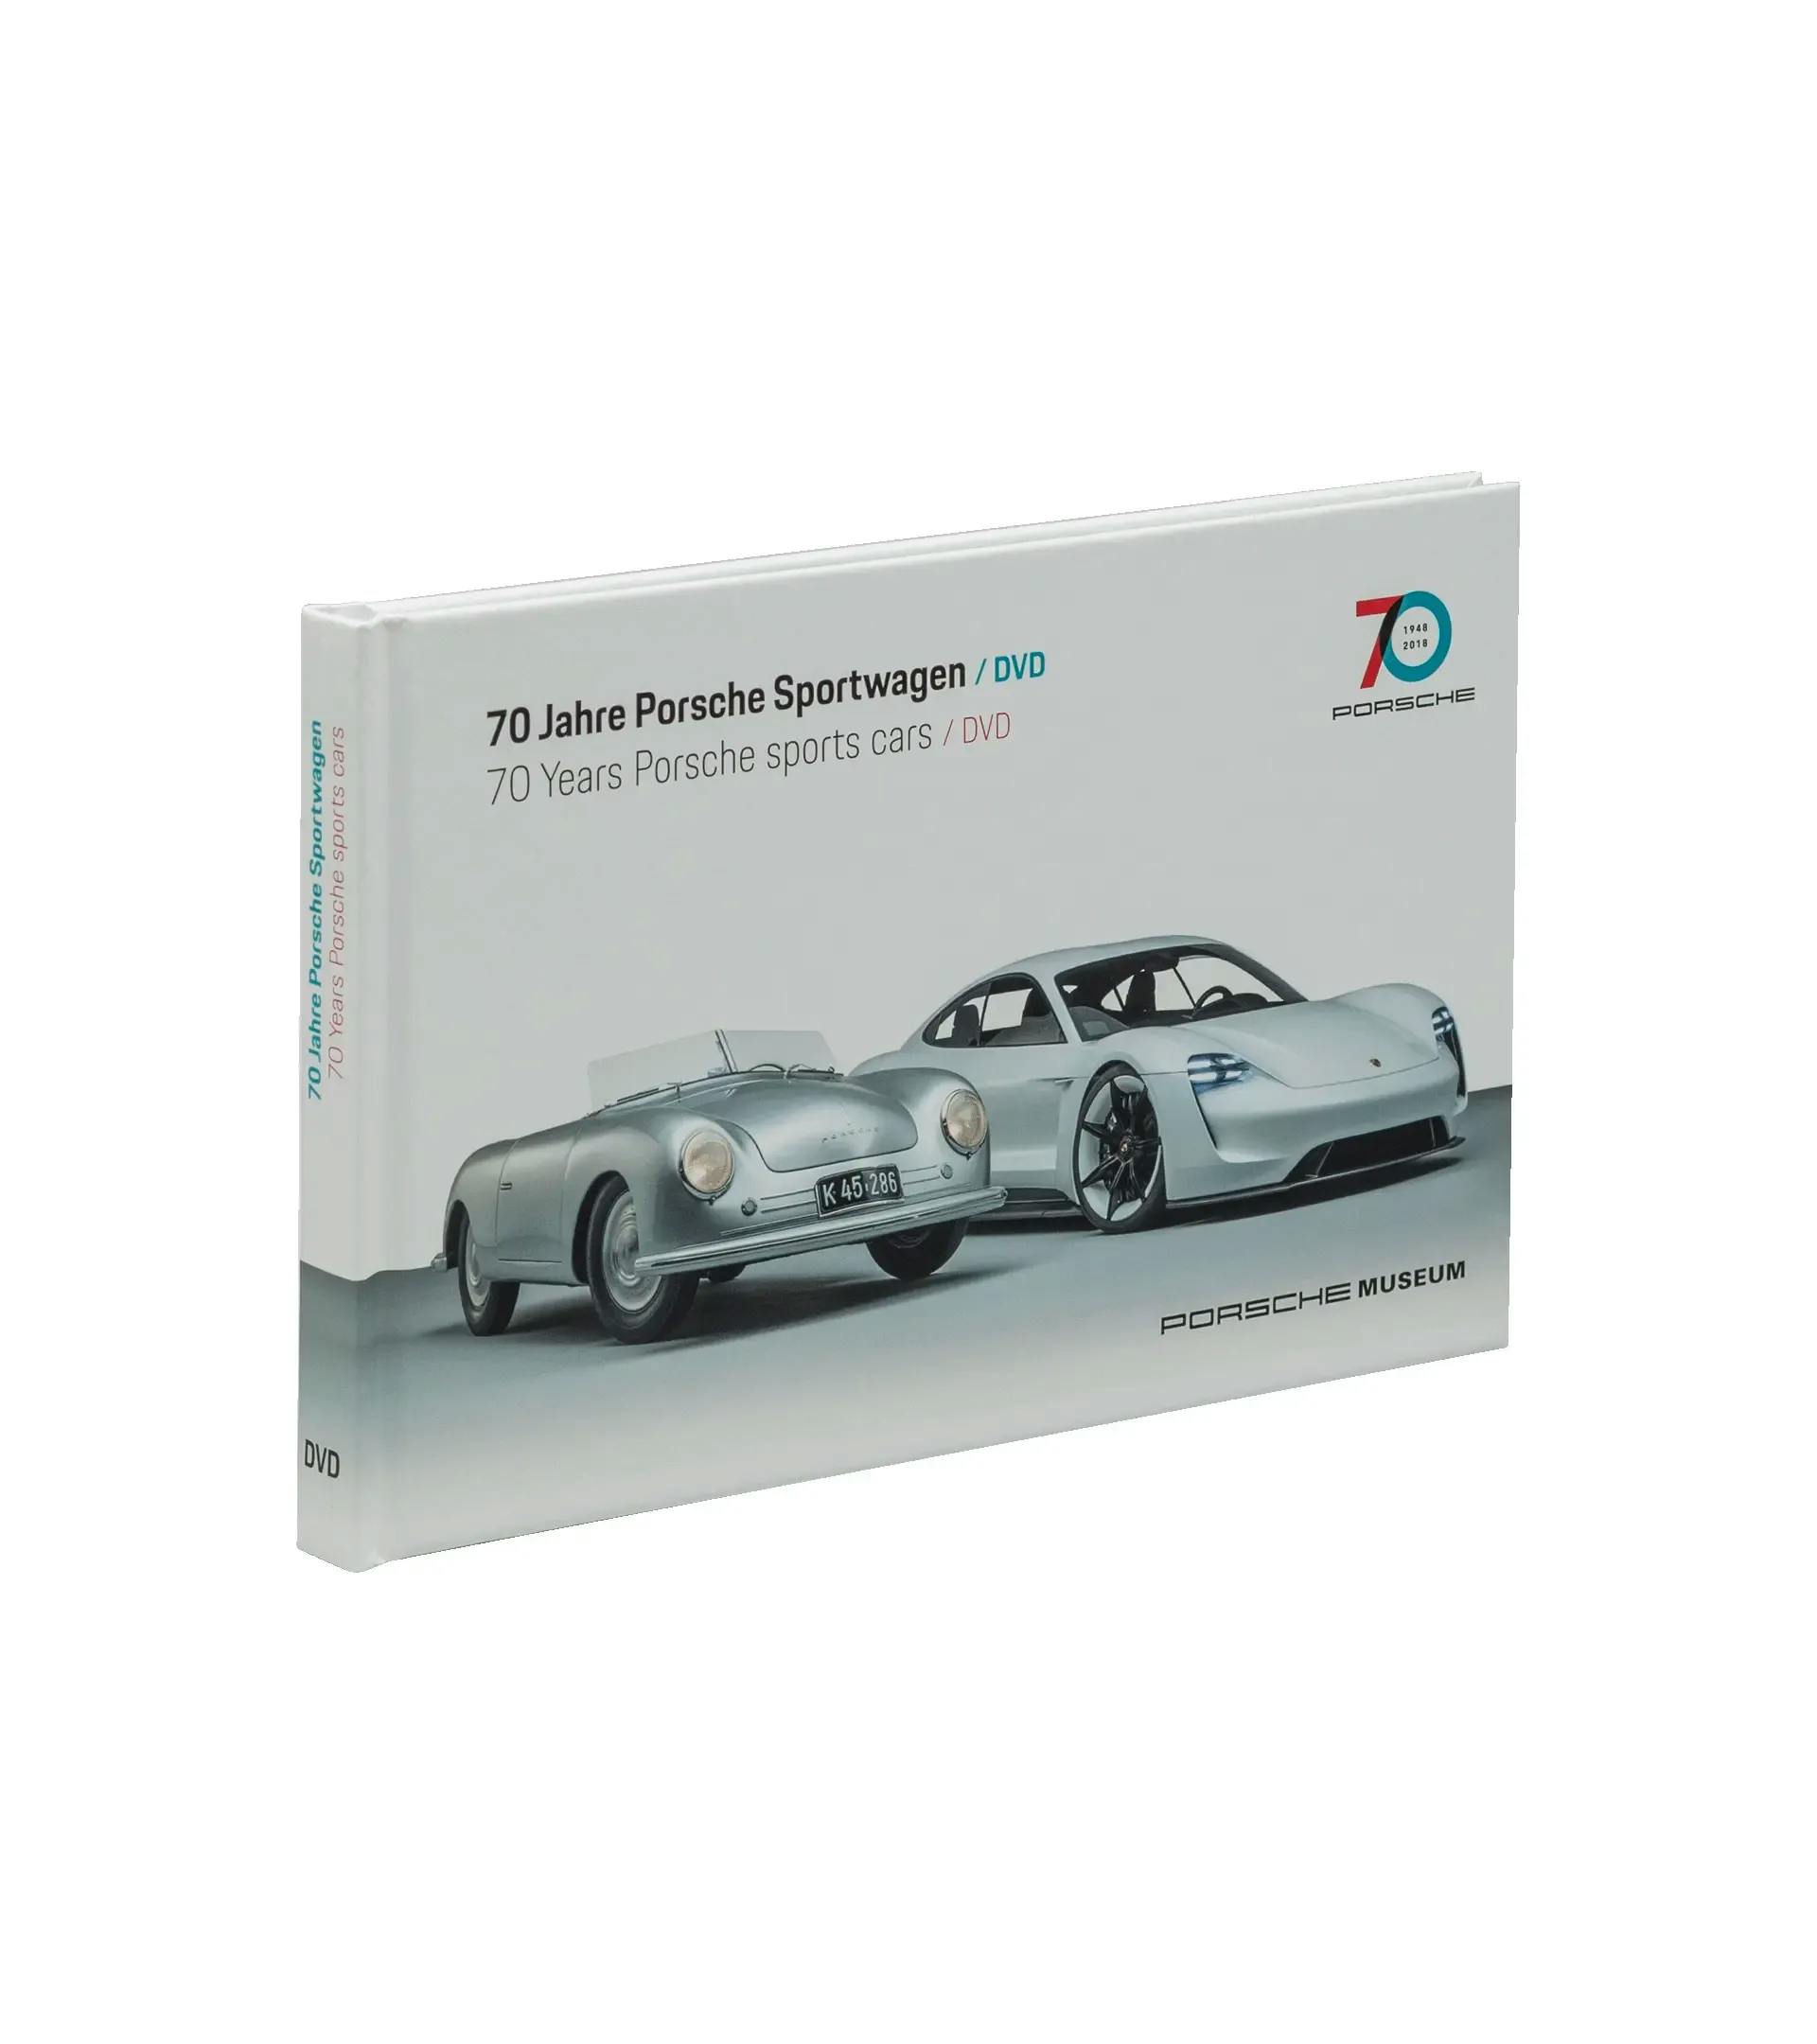 70 Jahre Porsche Sportwagen - DVD 1